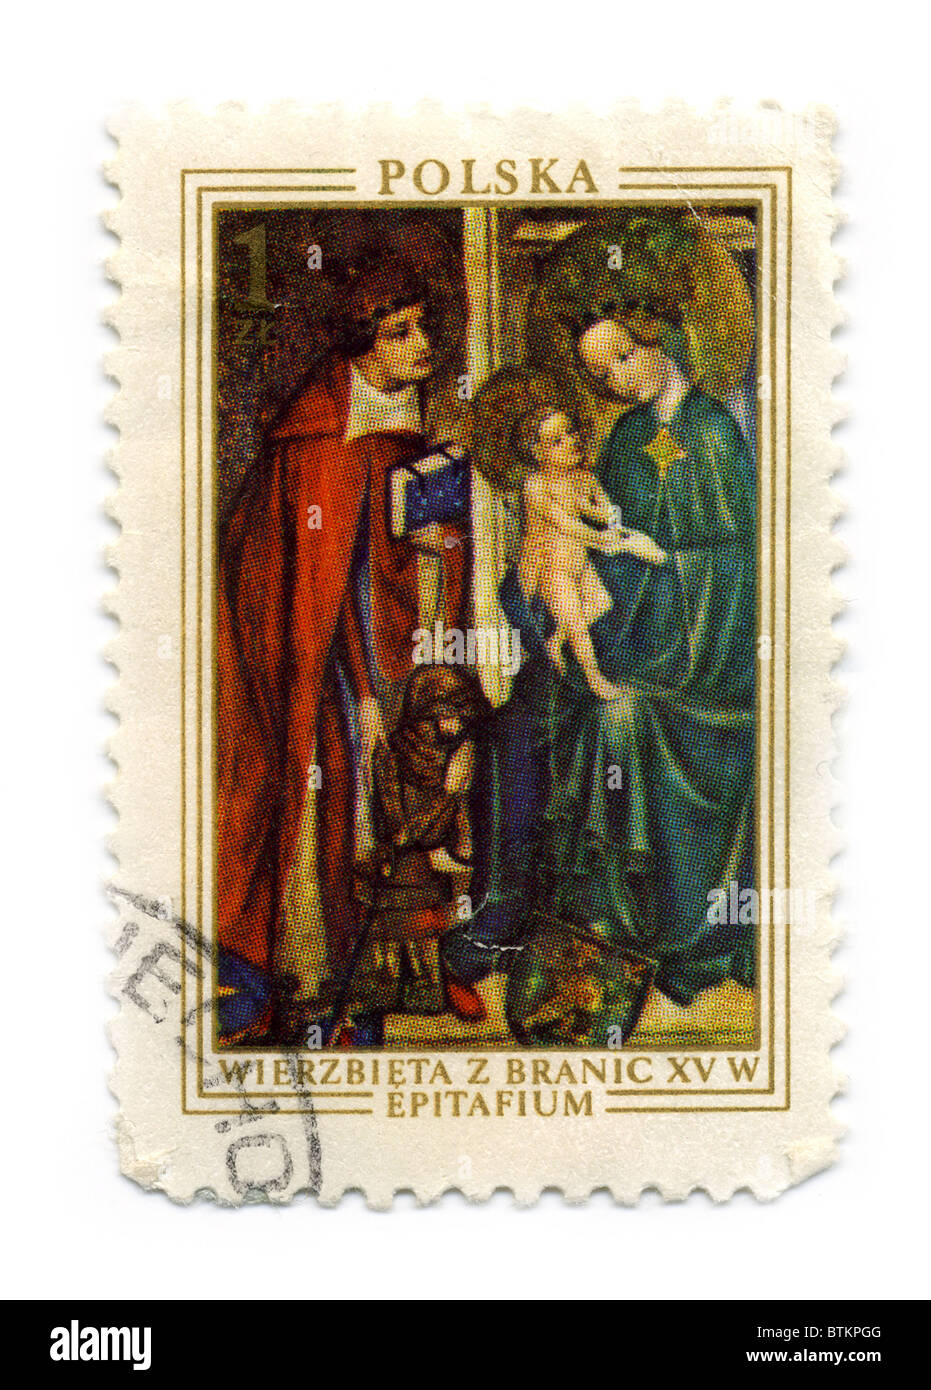 Polen - CIRCA 1976: Eine Briefmarke gedruckt in Polen zeigt Bild des Wierzbięta der Branice, ca. 1976. Stockfoto